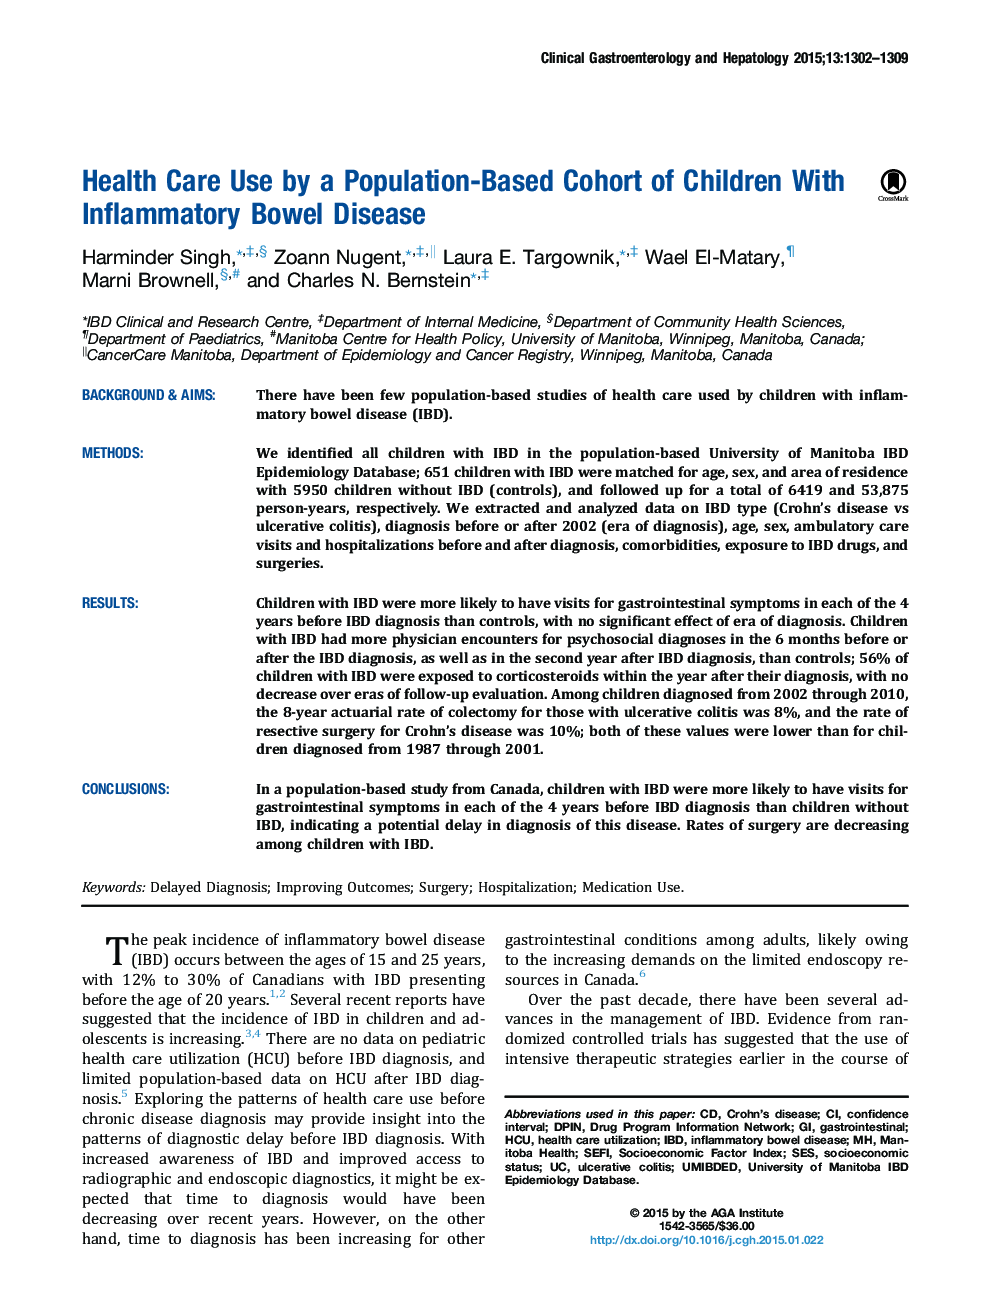 استفاده از مراقبت های بهداشتی توسط یک گروه جمعیتی مبتنی بر بیماری کودکان مبتلا به بیماری های روده ای التهابی 